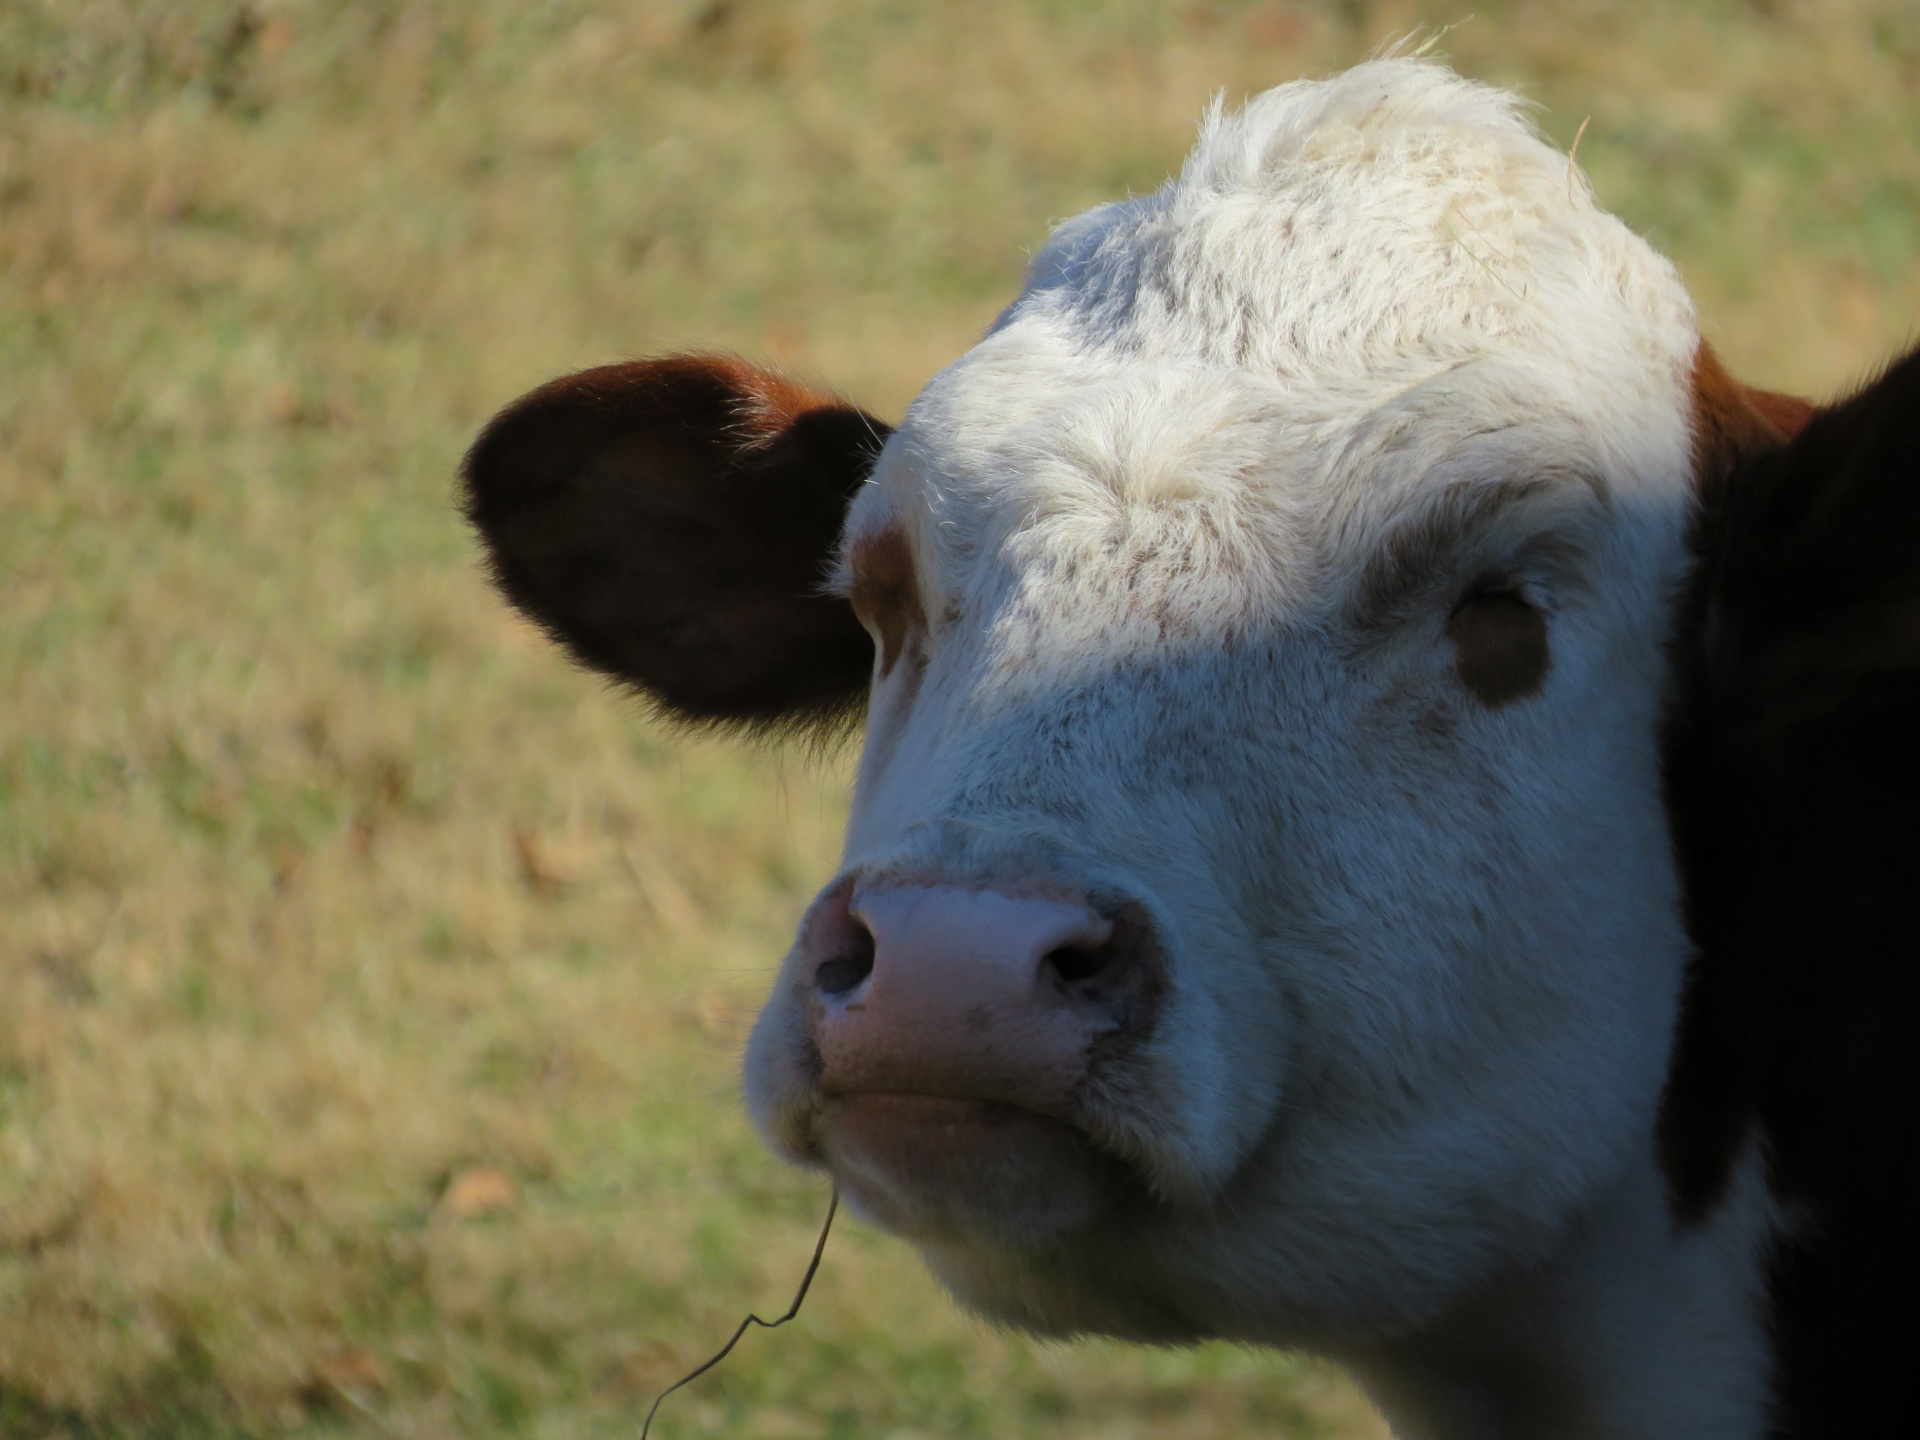 Cow At A Farm Sanctuary